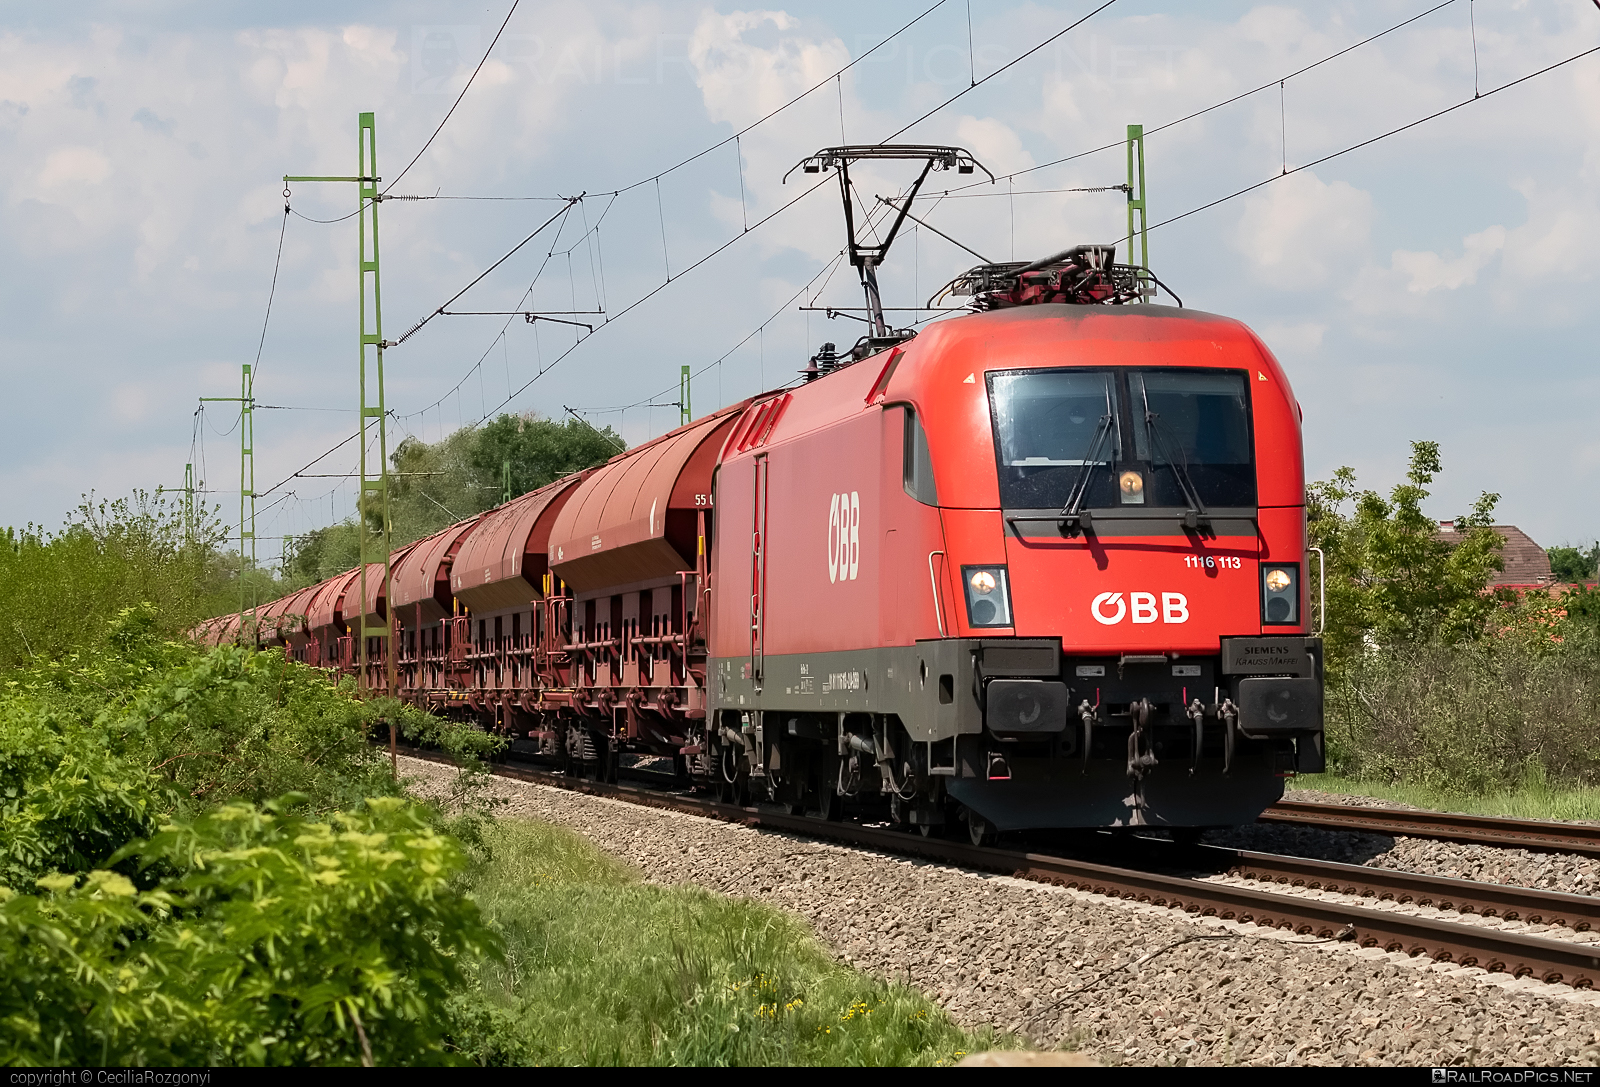 Siemens ES 64 U2 - 1116 113 operated by Rail Cargo Hungaria ZRt. #es64 #es64u2 #eurosprinter #hopperwagon #obb #osterreichischebundesbahnen #rch #siemens #siemenses64 #siemenses64u2 #siemenstaurus #taurus #tauruslocomotive